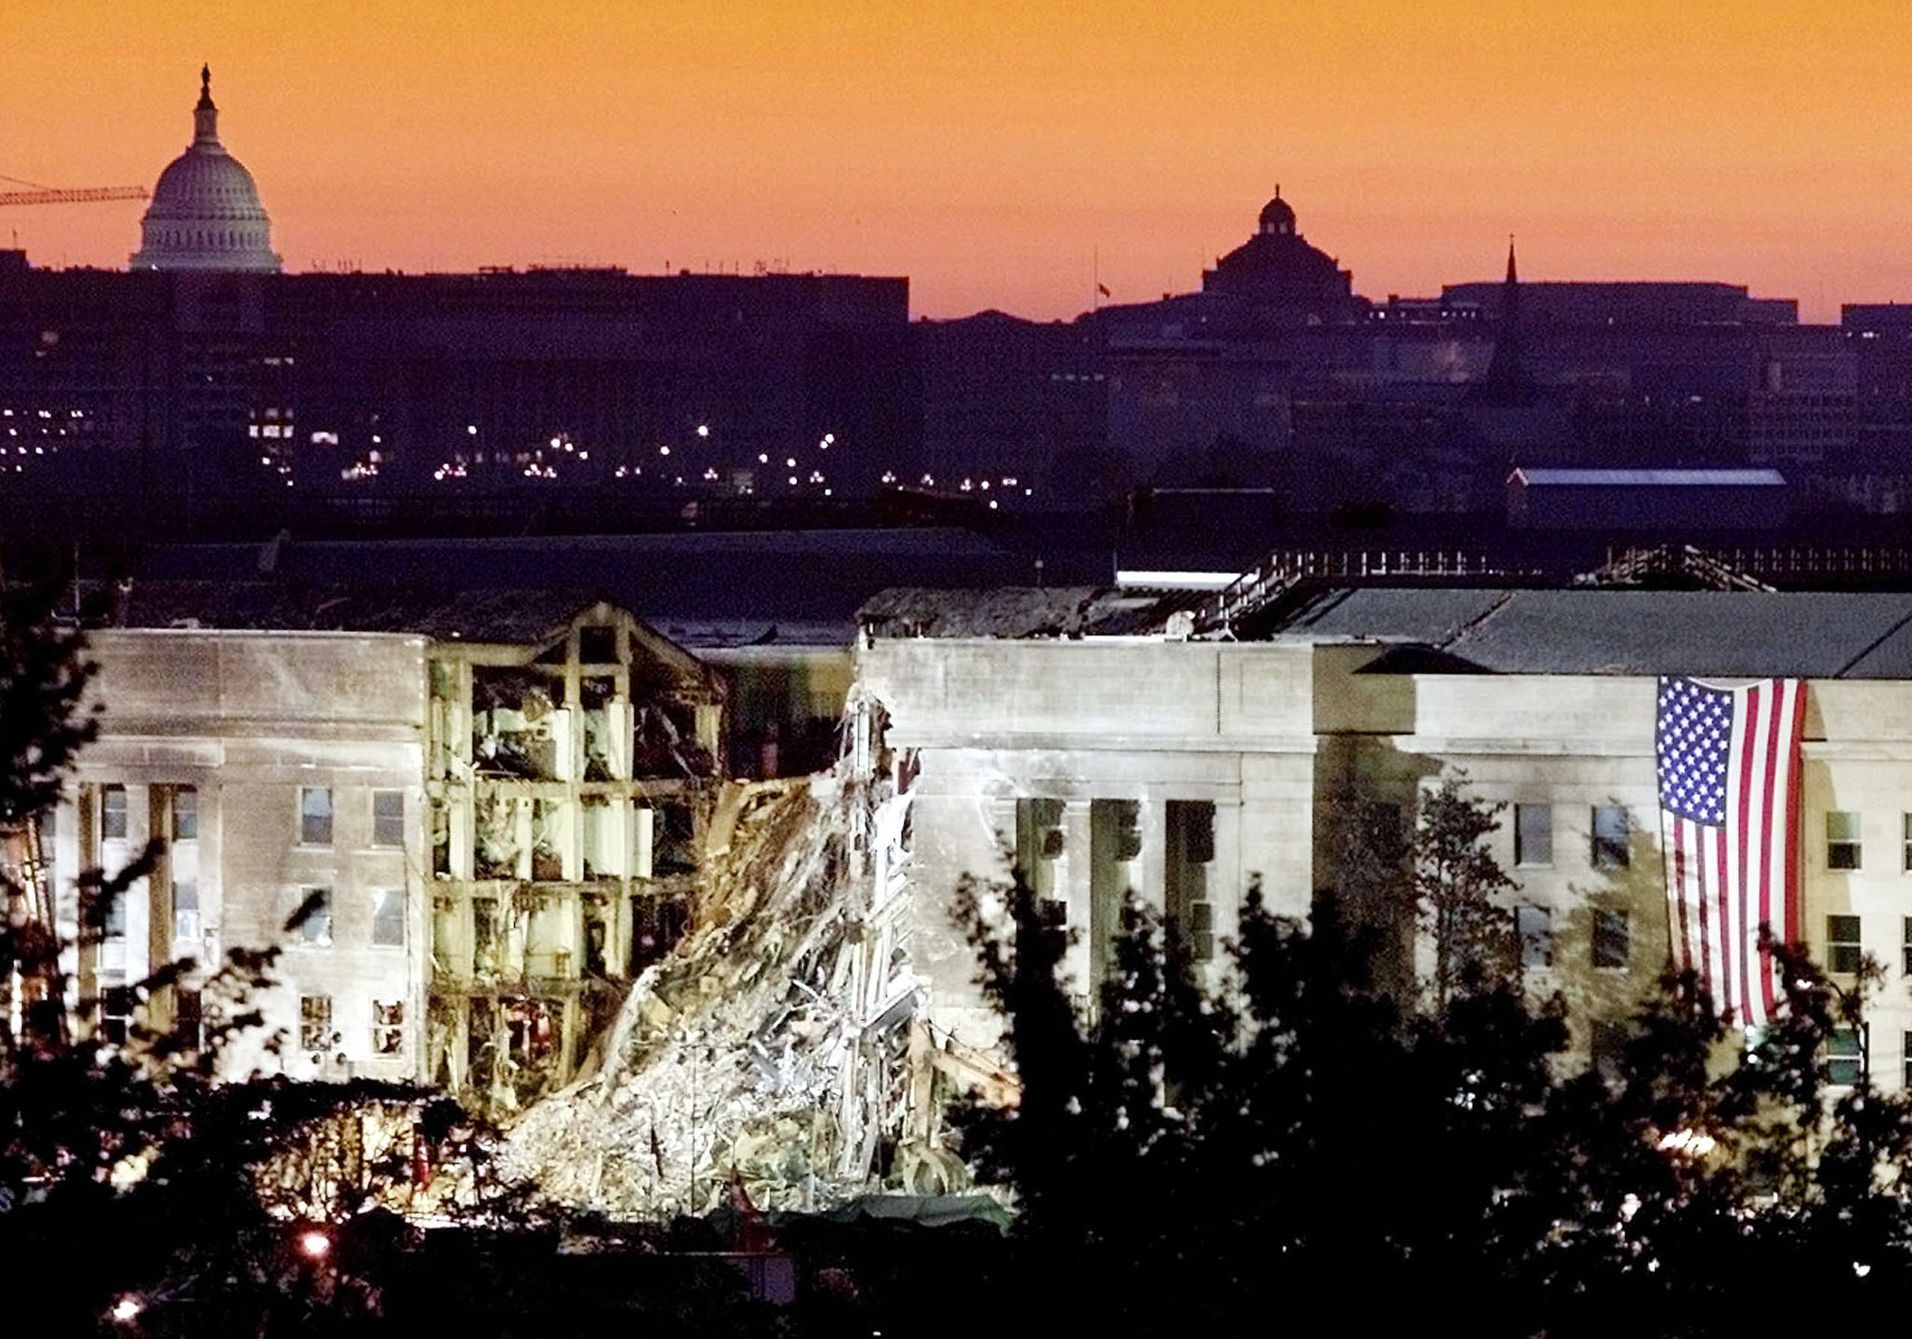 Fotogalerie / 11. 9. 2001 / 11. září 2001 / Teroristický útok / Terorismus / USA / Historie / Výročí / Reuters / 20